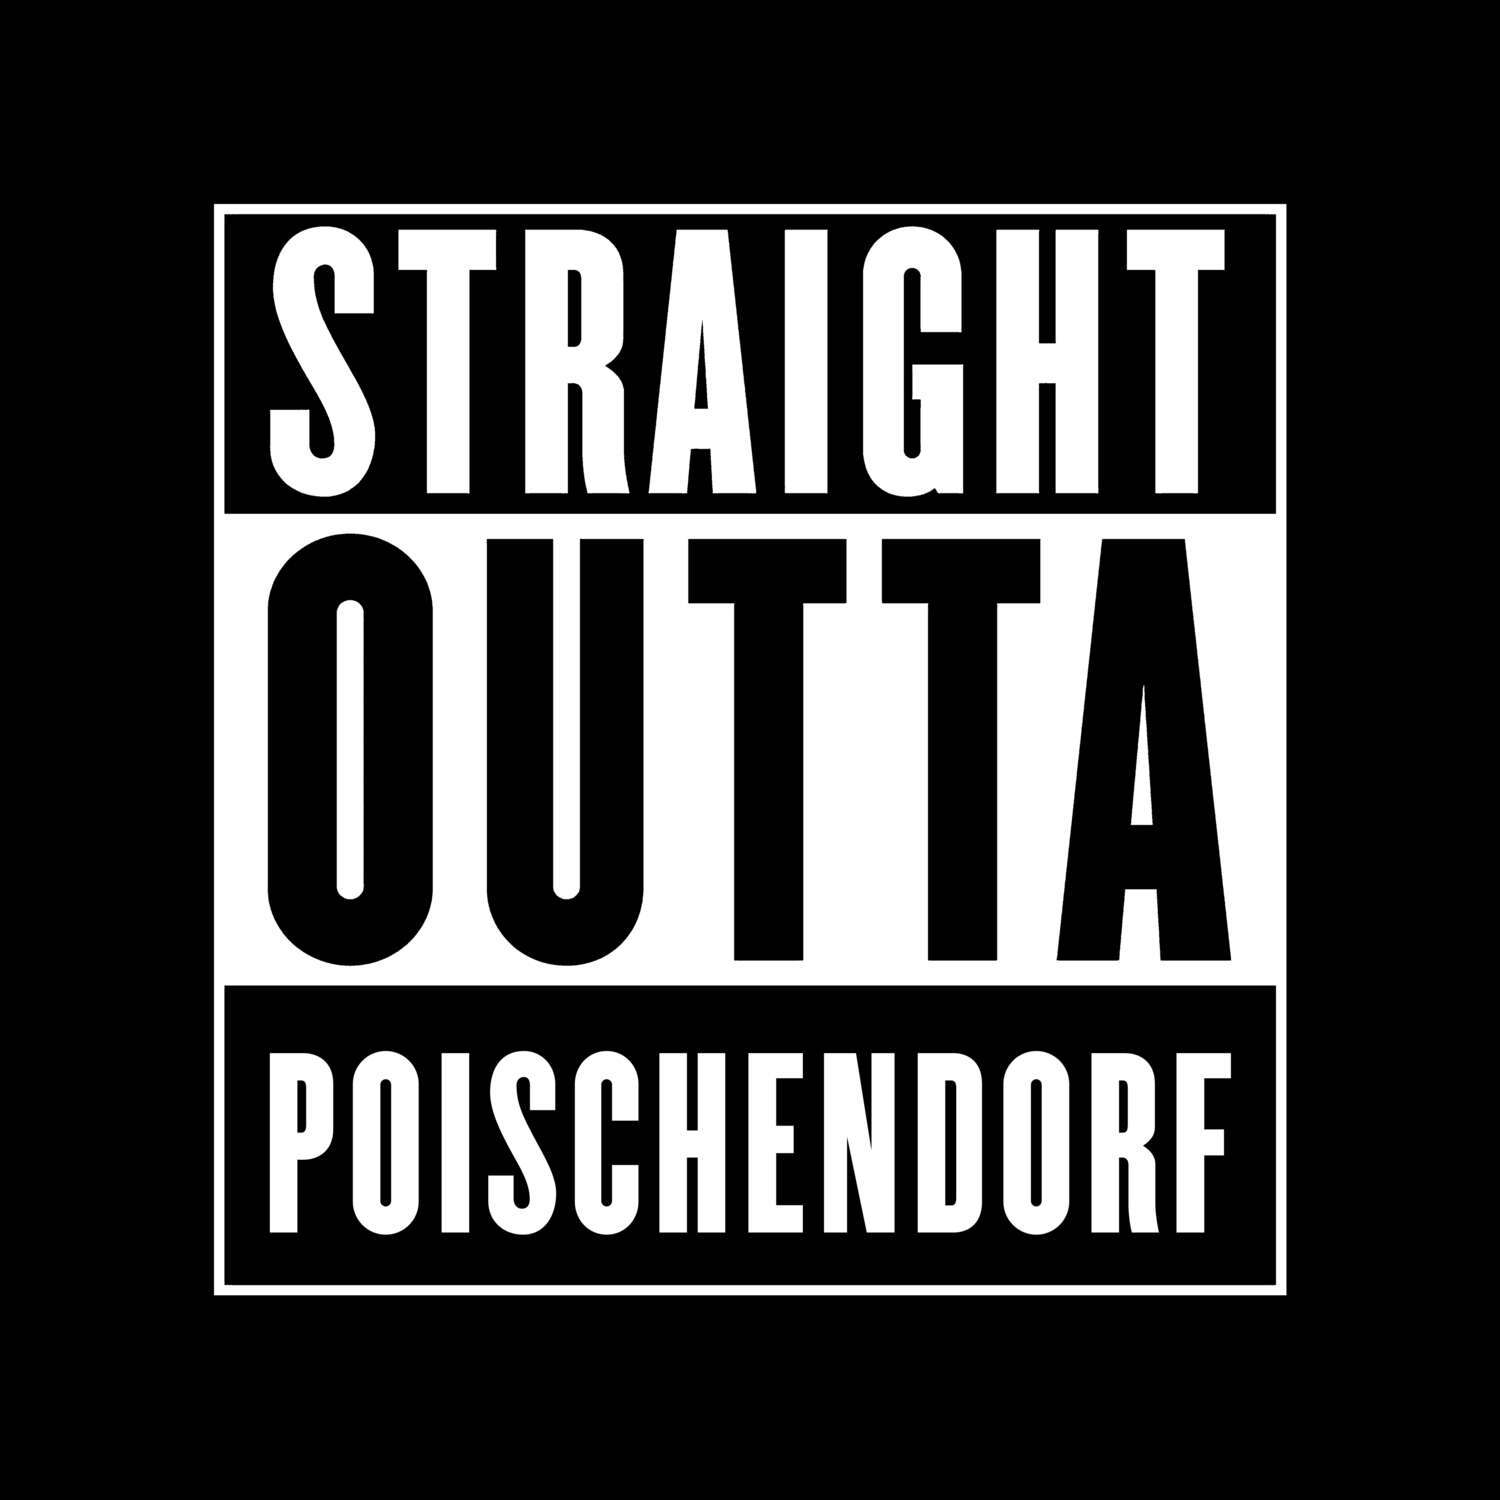 Poischendorf T-Shirt »Straight Outta«